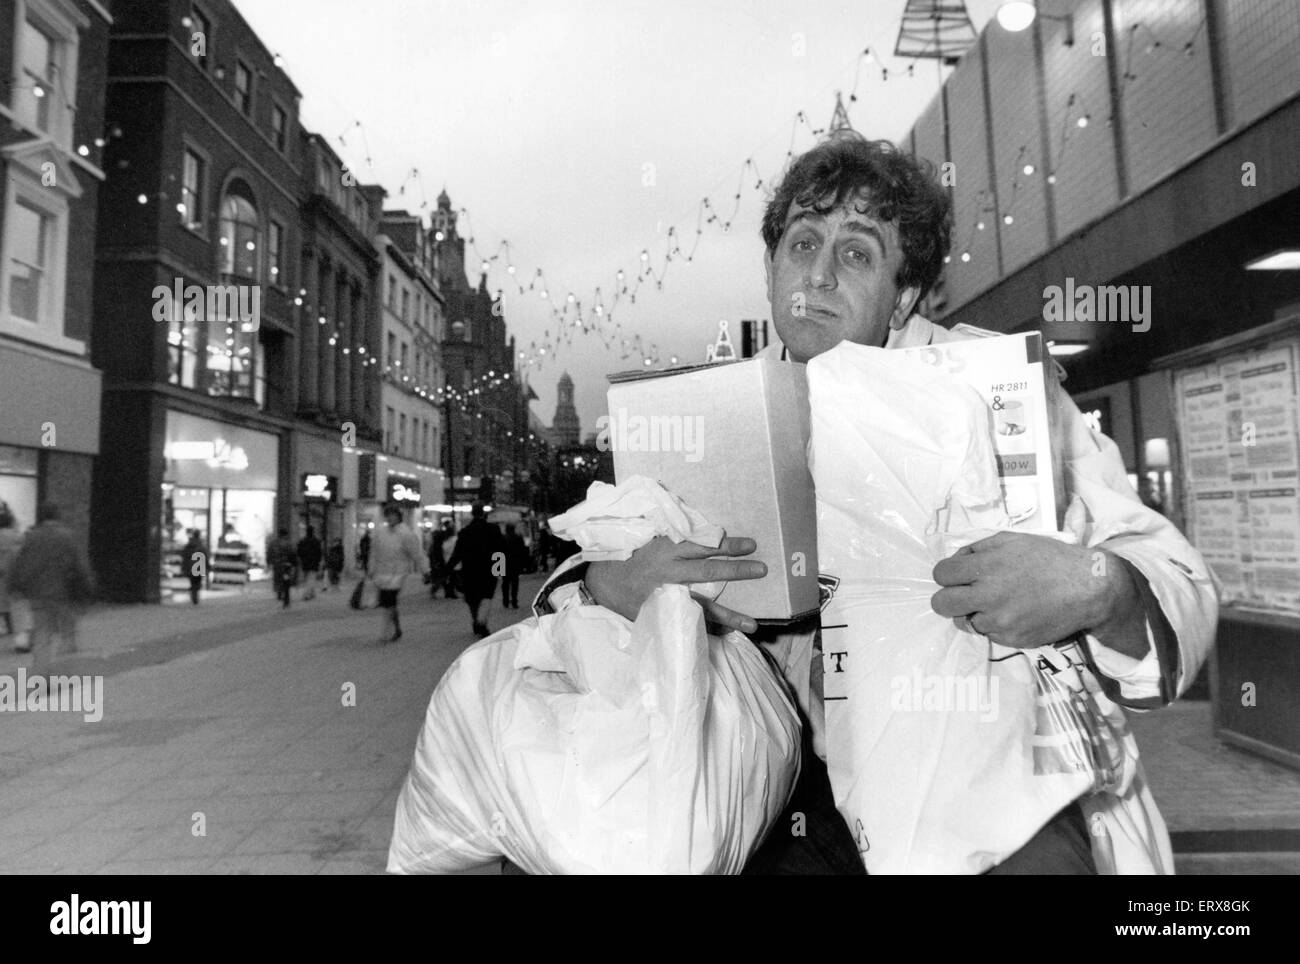 Eamon O'Neal, presentador de TV, Abasteciendo Arriba para Navidad en Granada TV, presenta una serie de programas semanales para ayudar a lidiar con la festiva fiasco, foto, Church Street, Liverpool, el 30 de noviembre de 1992. Foto de stock